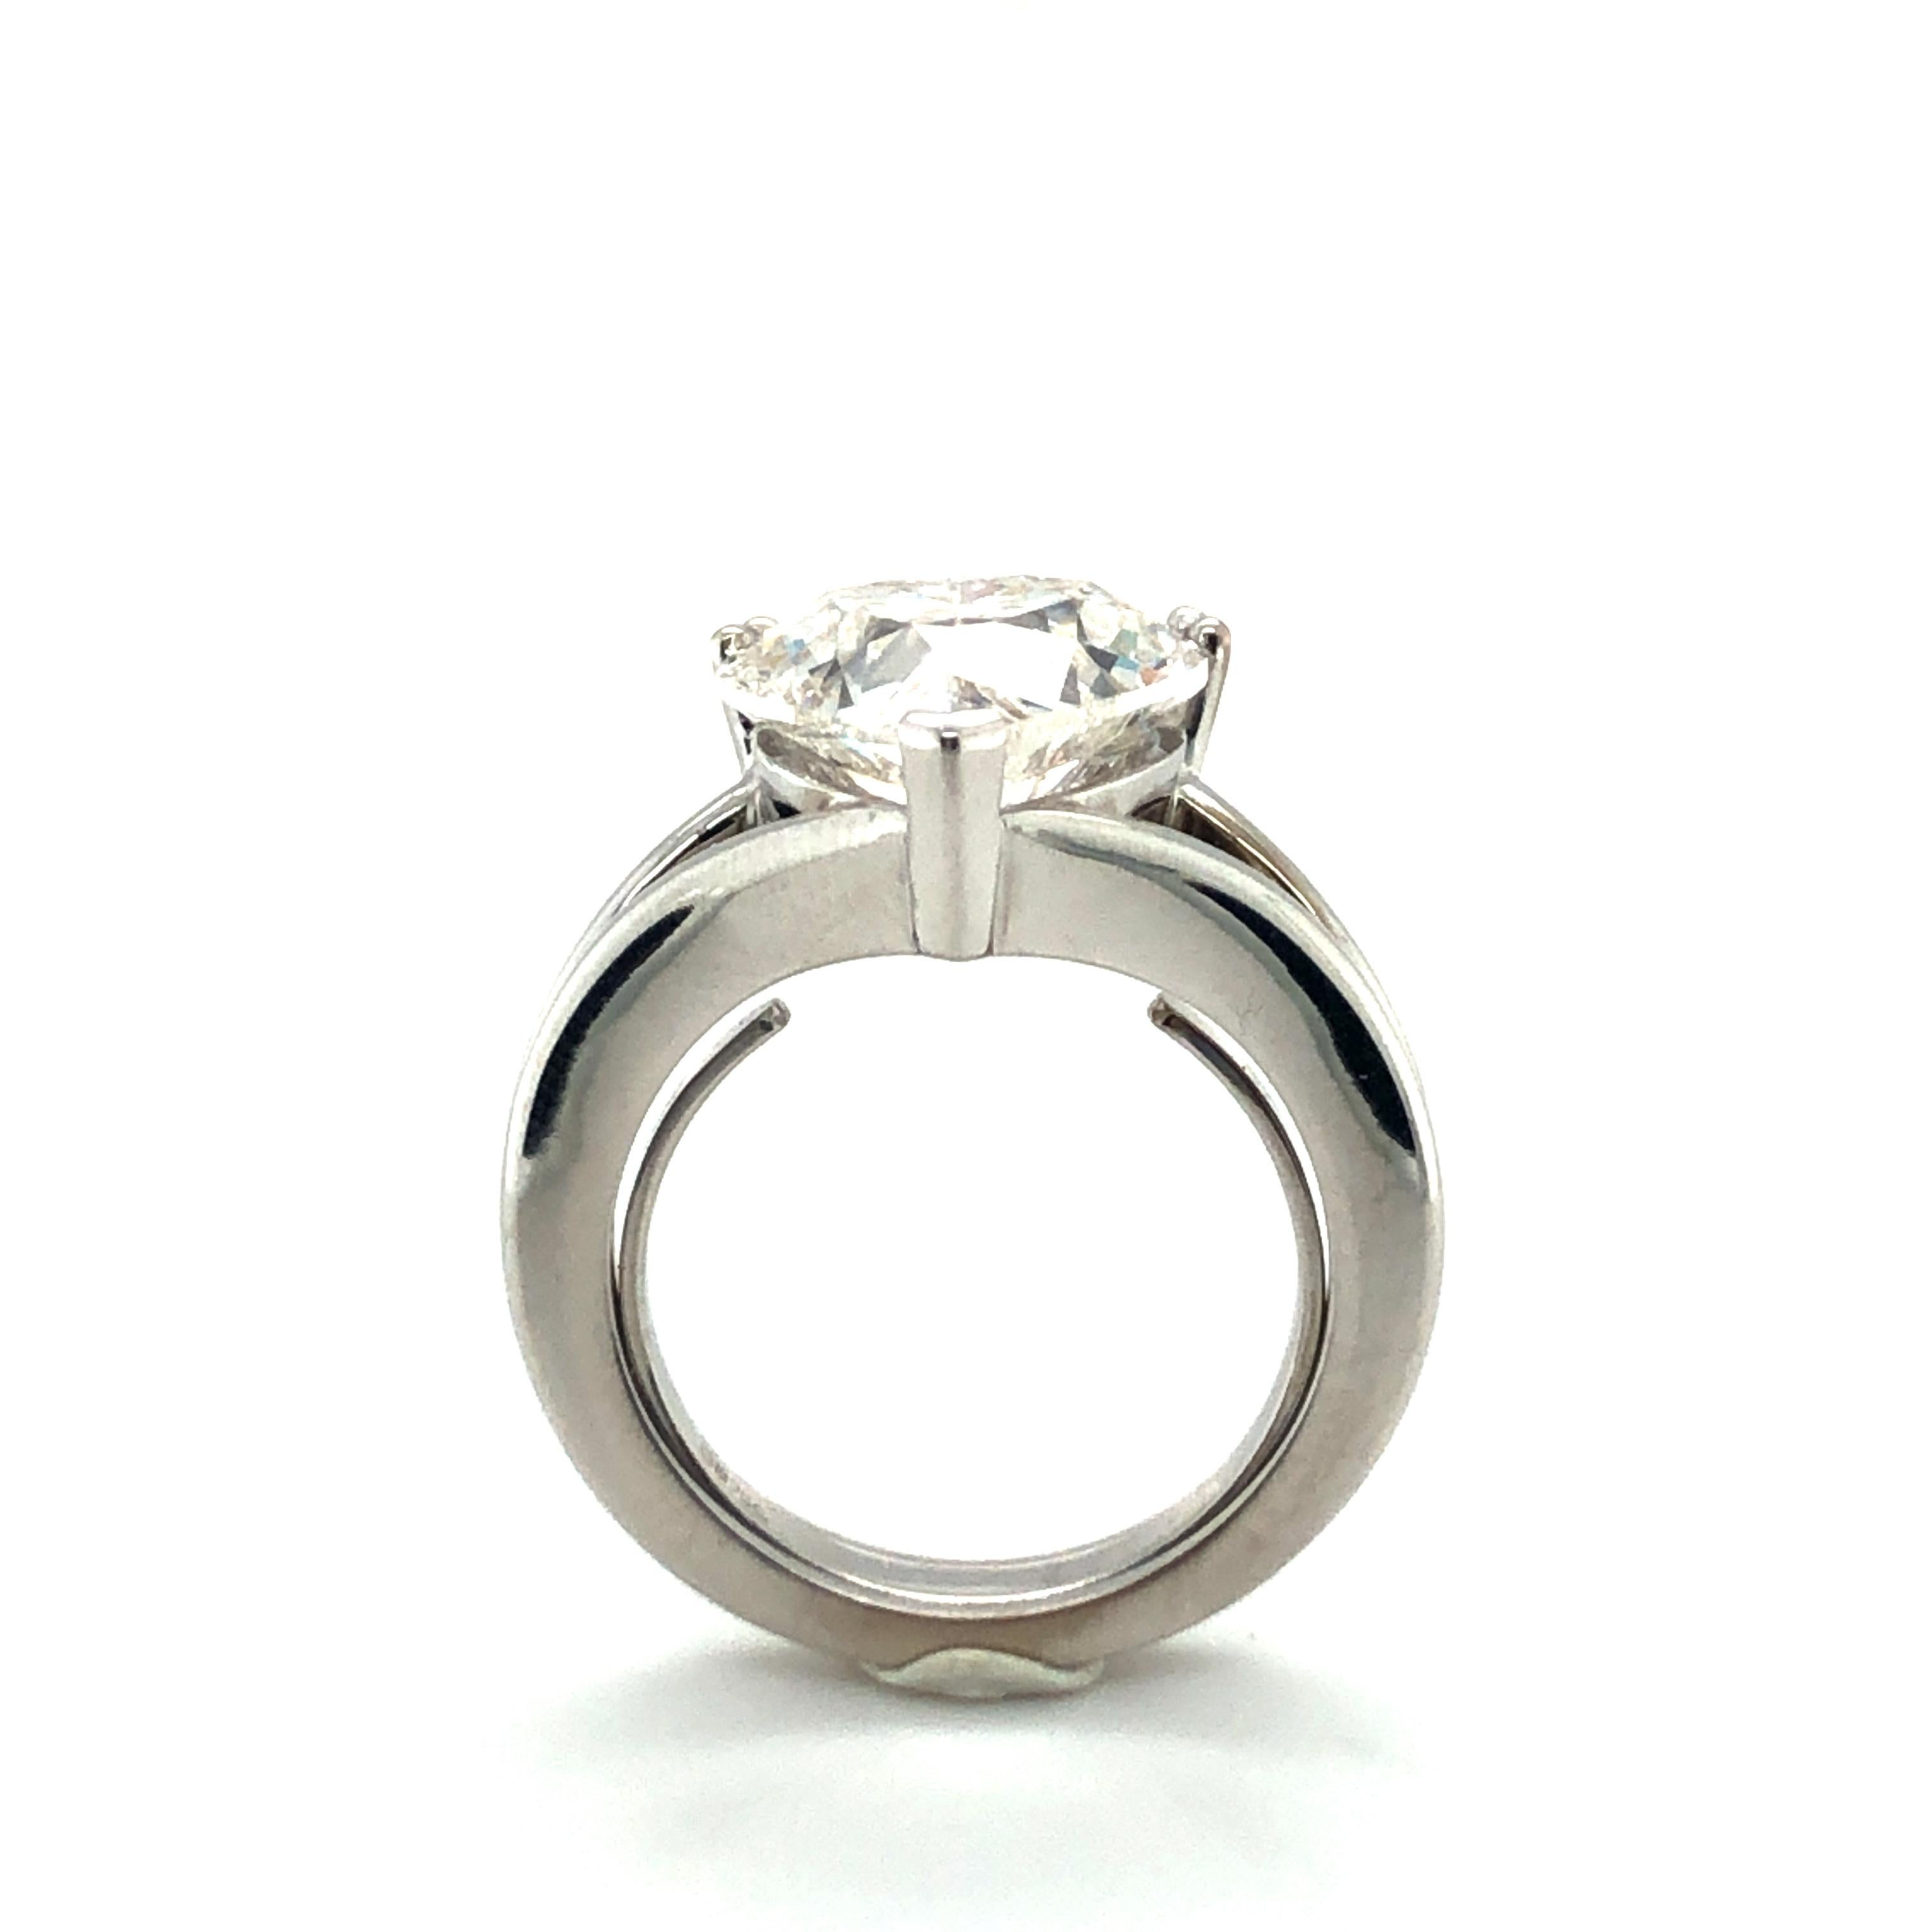 GIA Certified 5.04 Carat Heart-Shaped Diamond Ring in 18 Karat White Gold 2